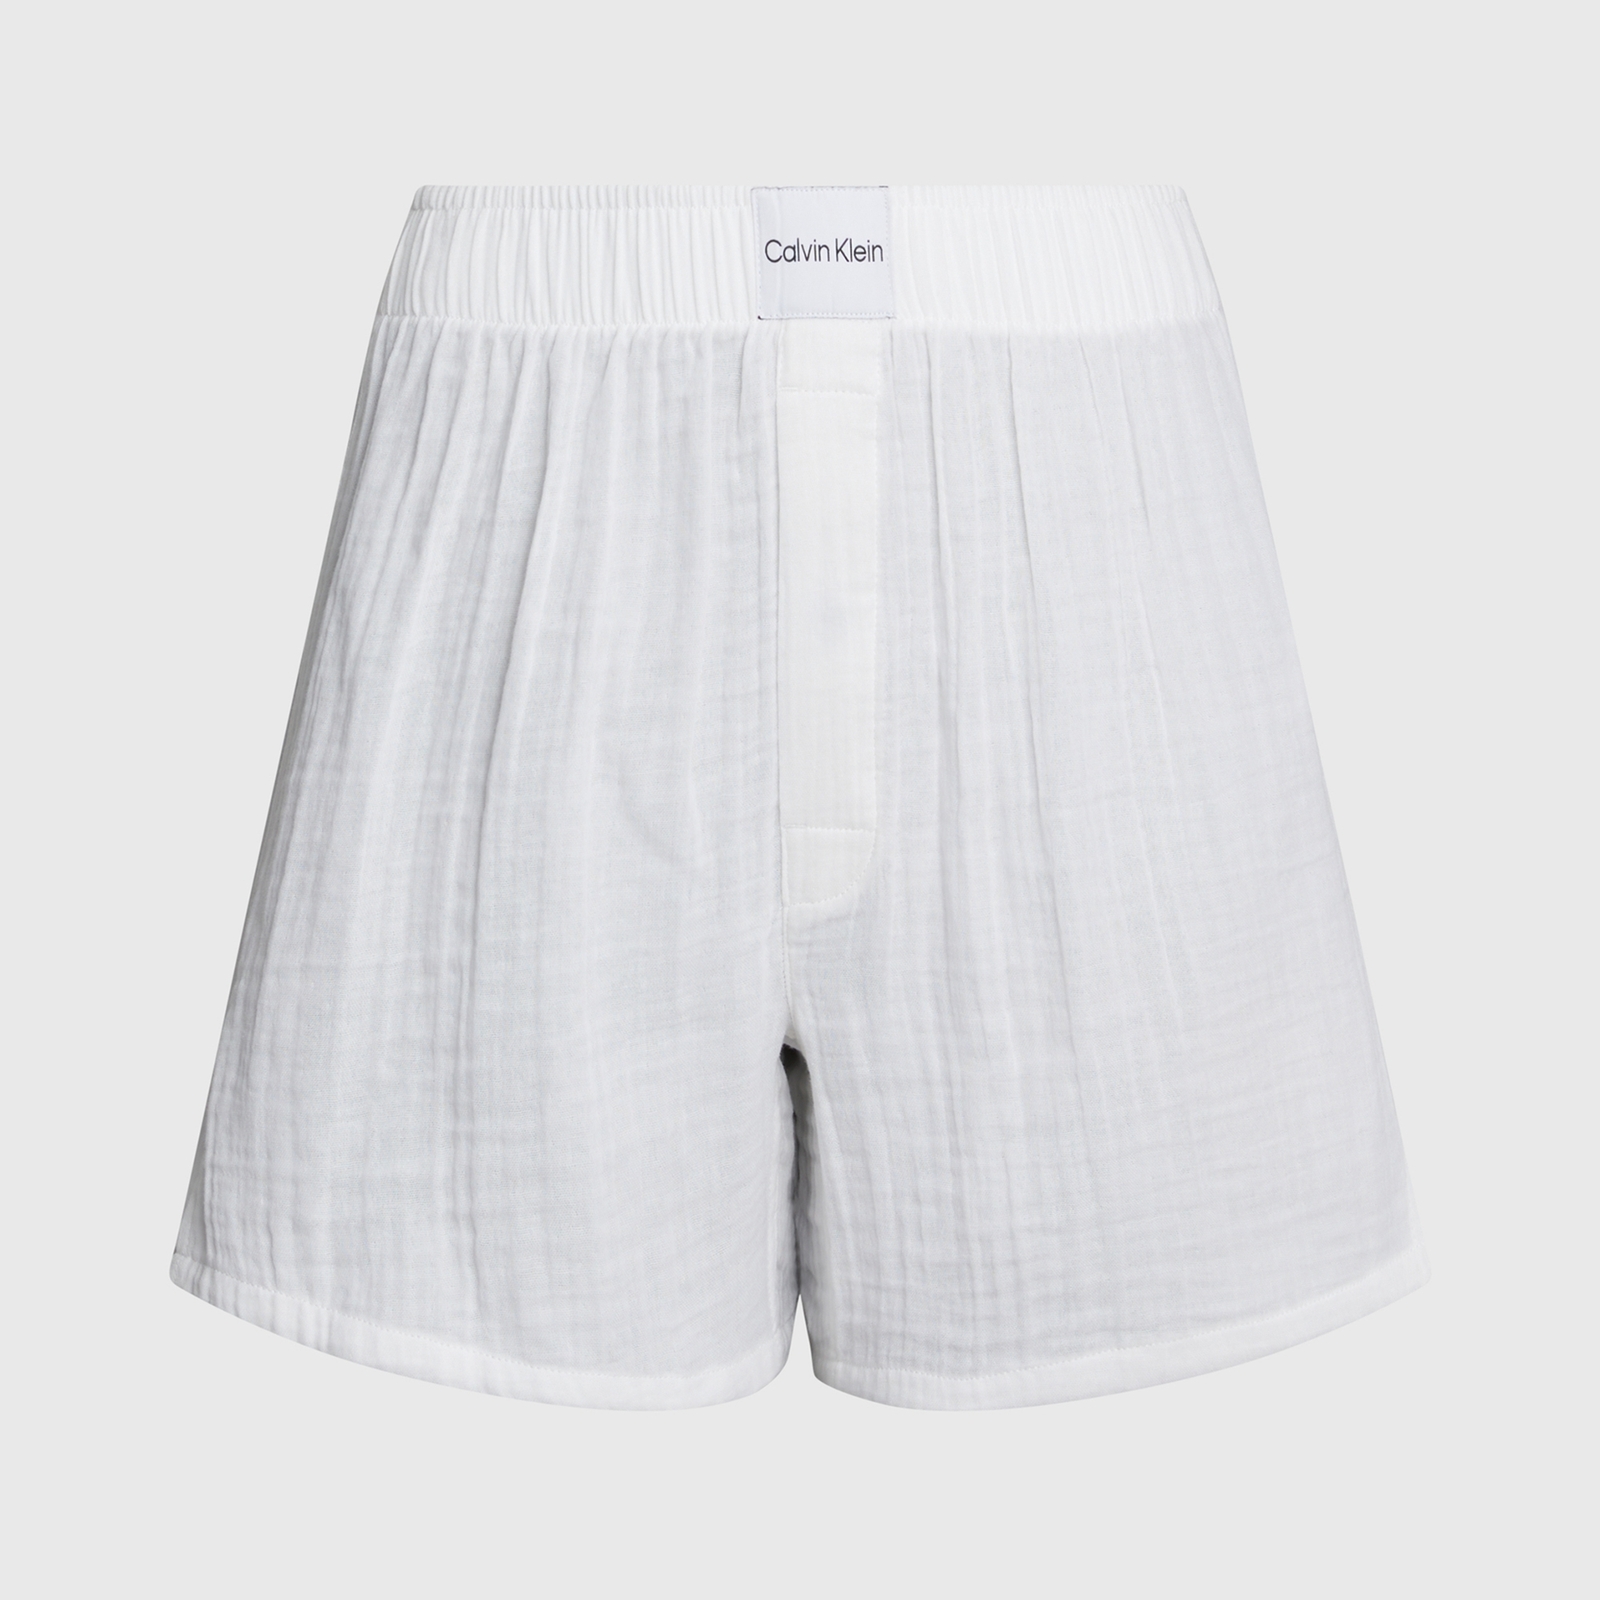 Calvin Klein Textured Cotton Boxer Shorts